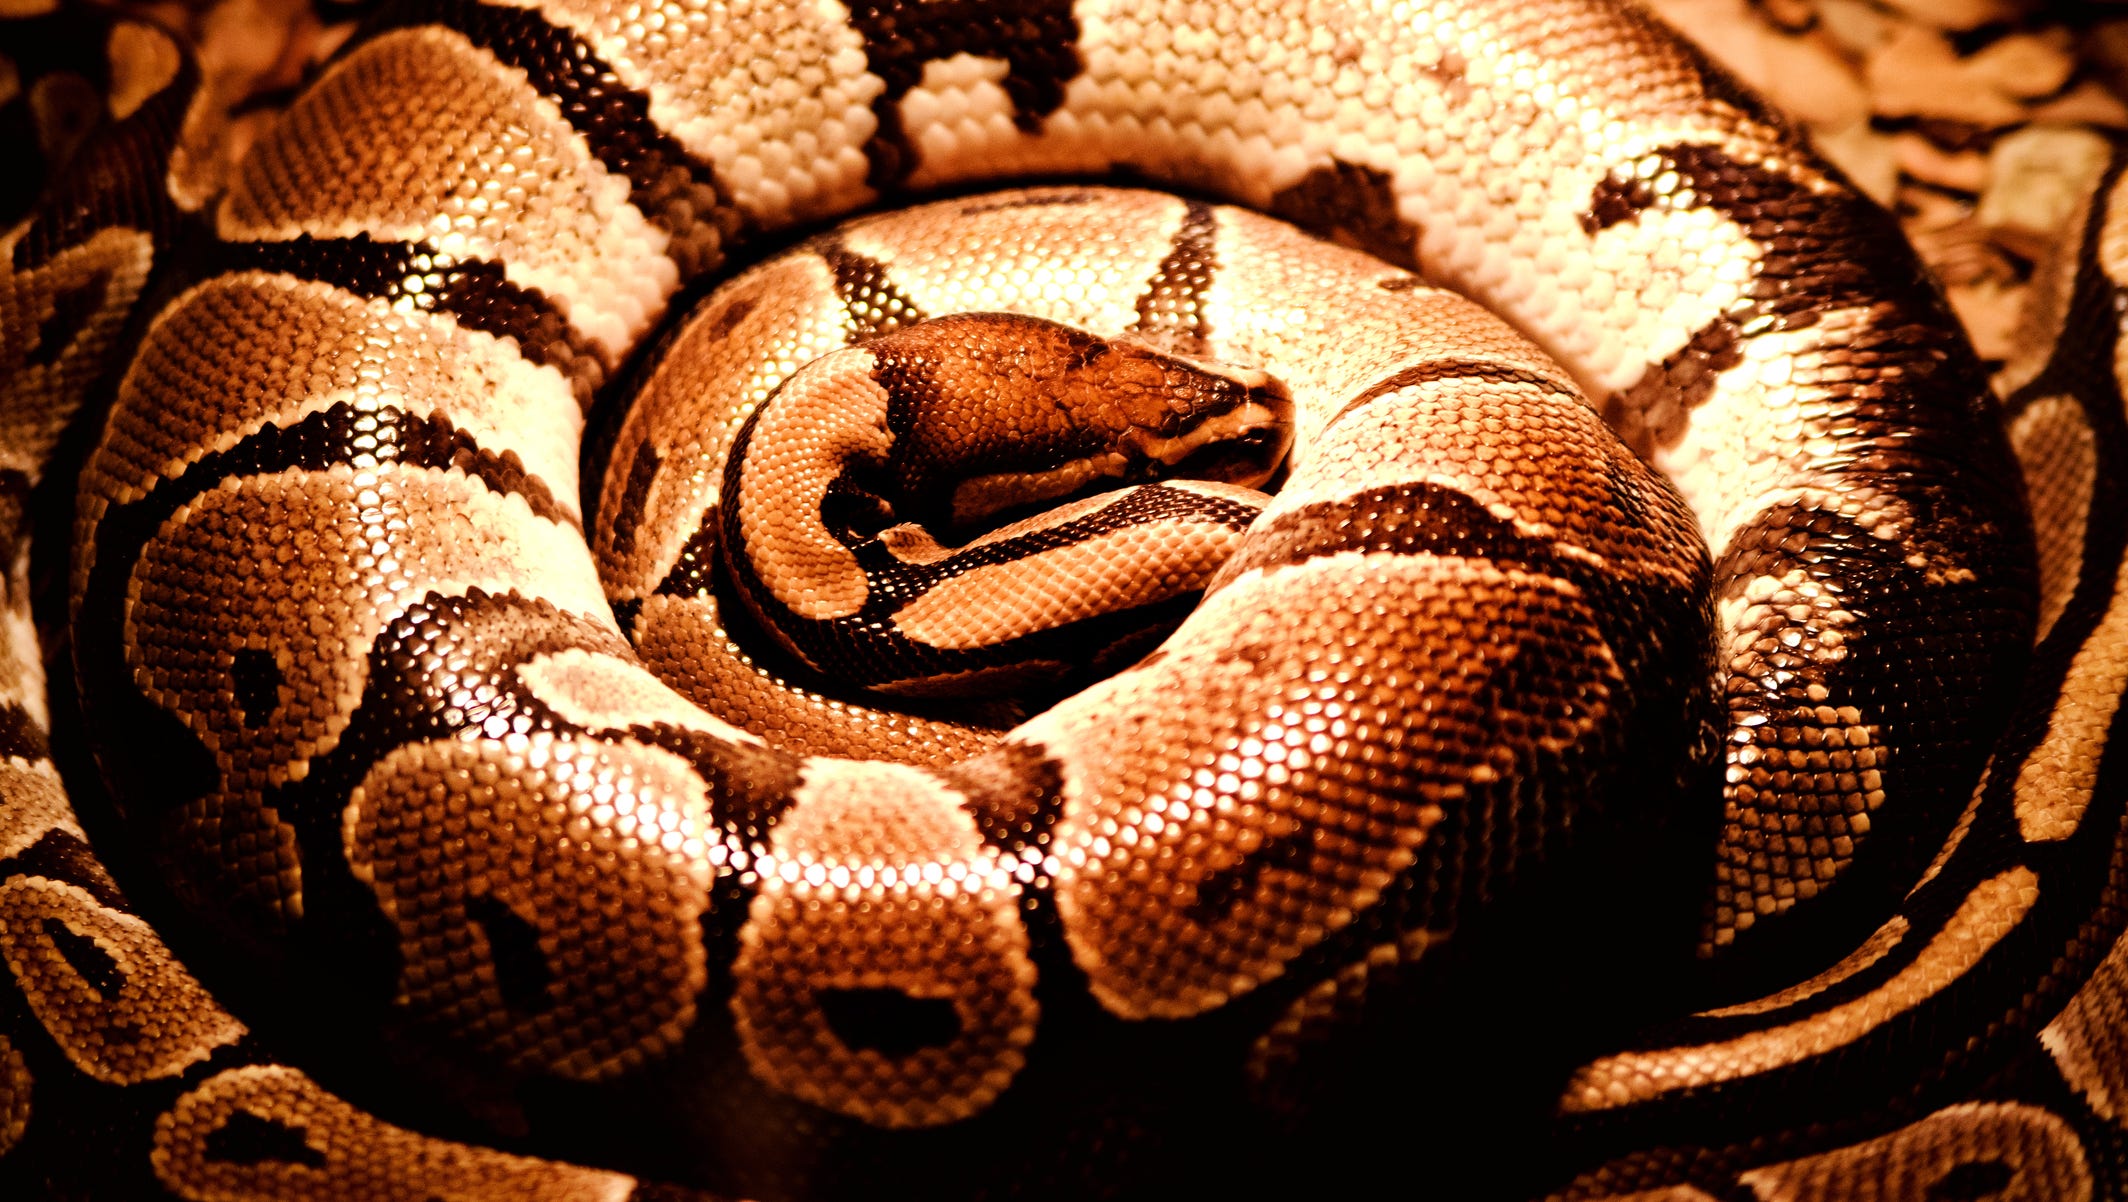 Can a python crush a human?